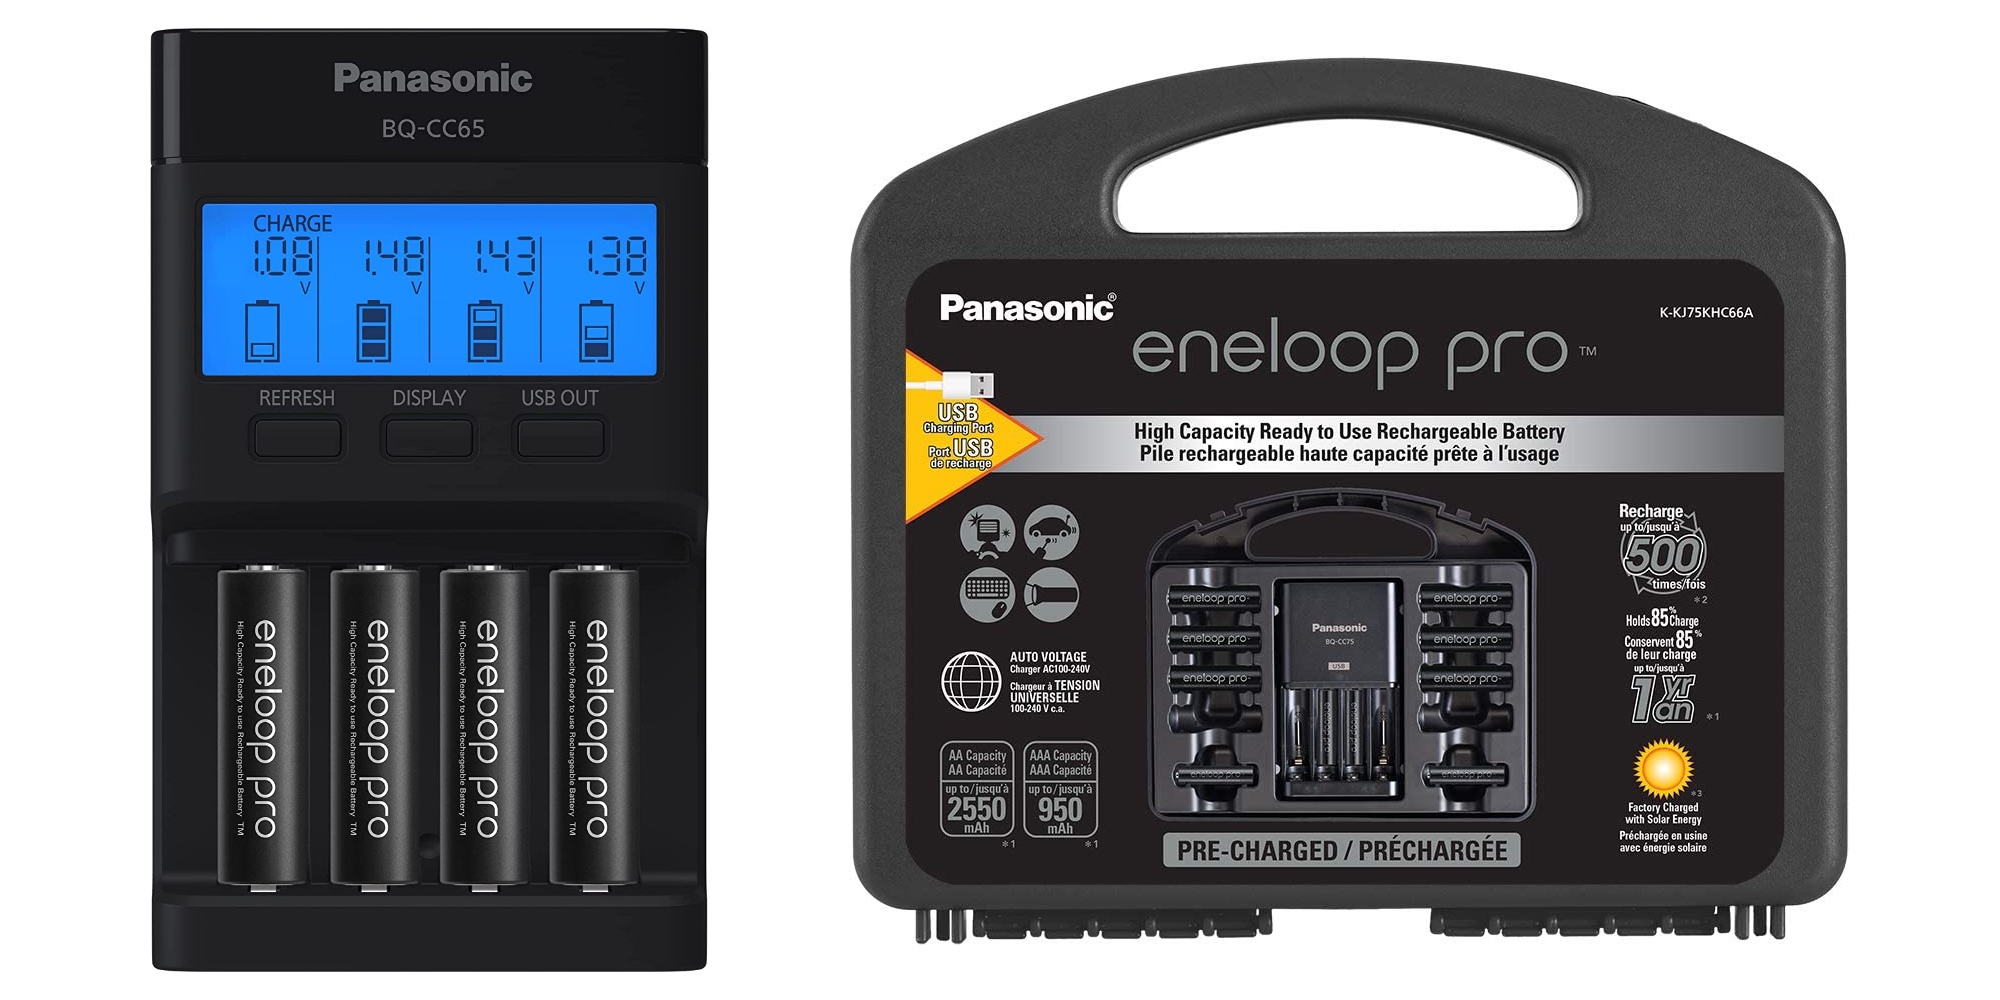 Panasonic's popular eneloop pro rechargeable battery bundle hits